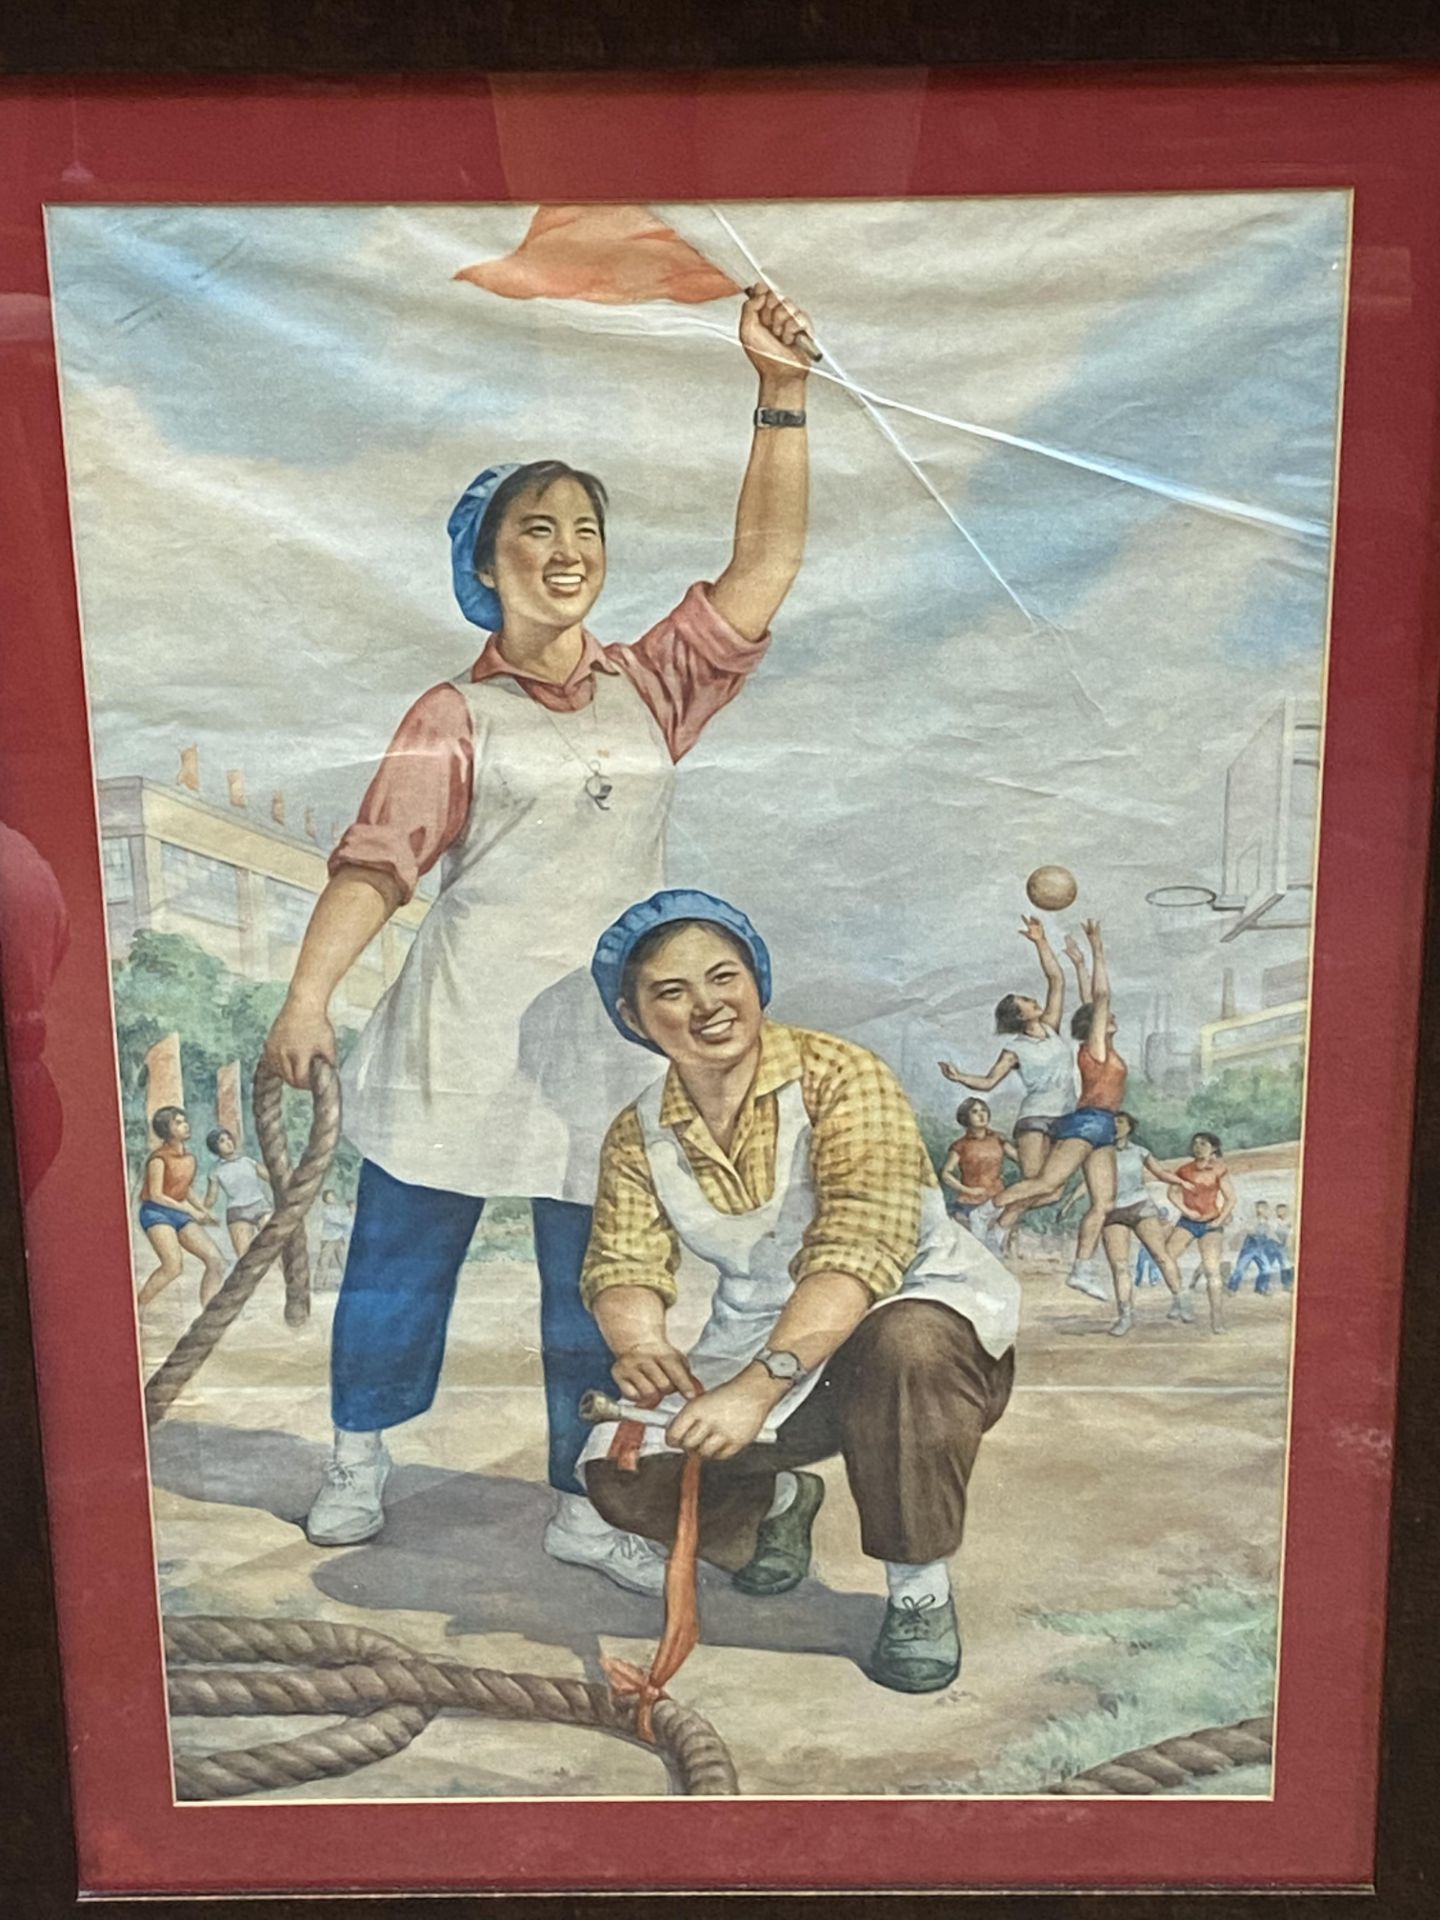 China propaganda poster - Image 3 of 3